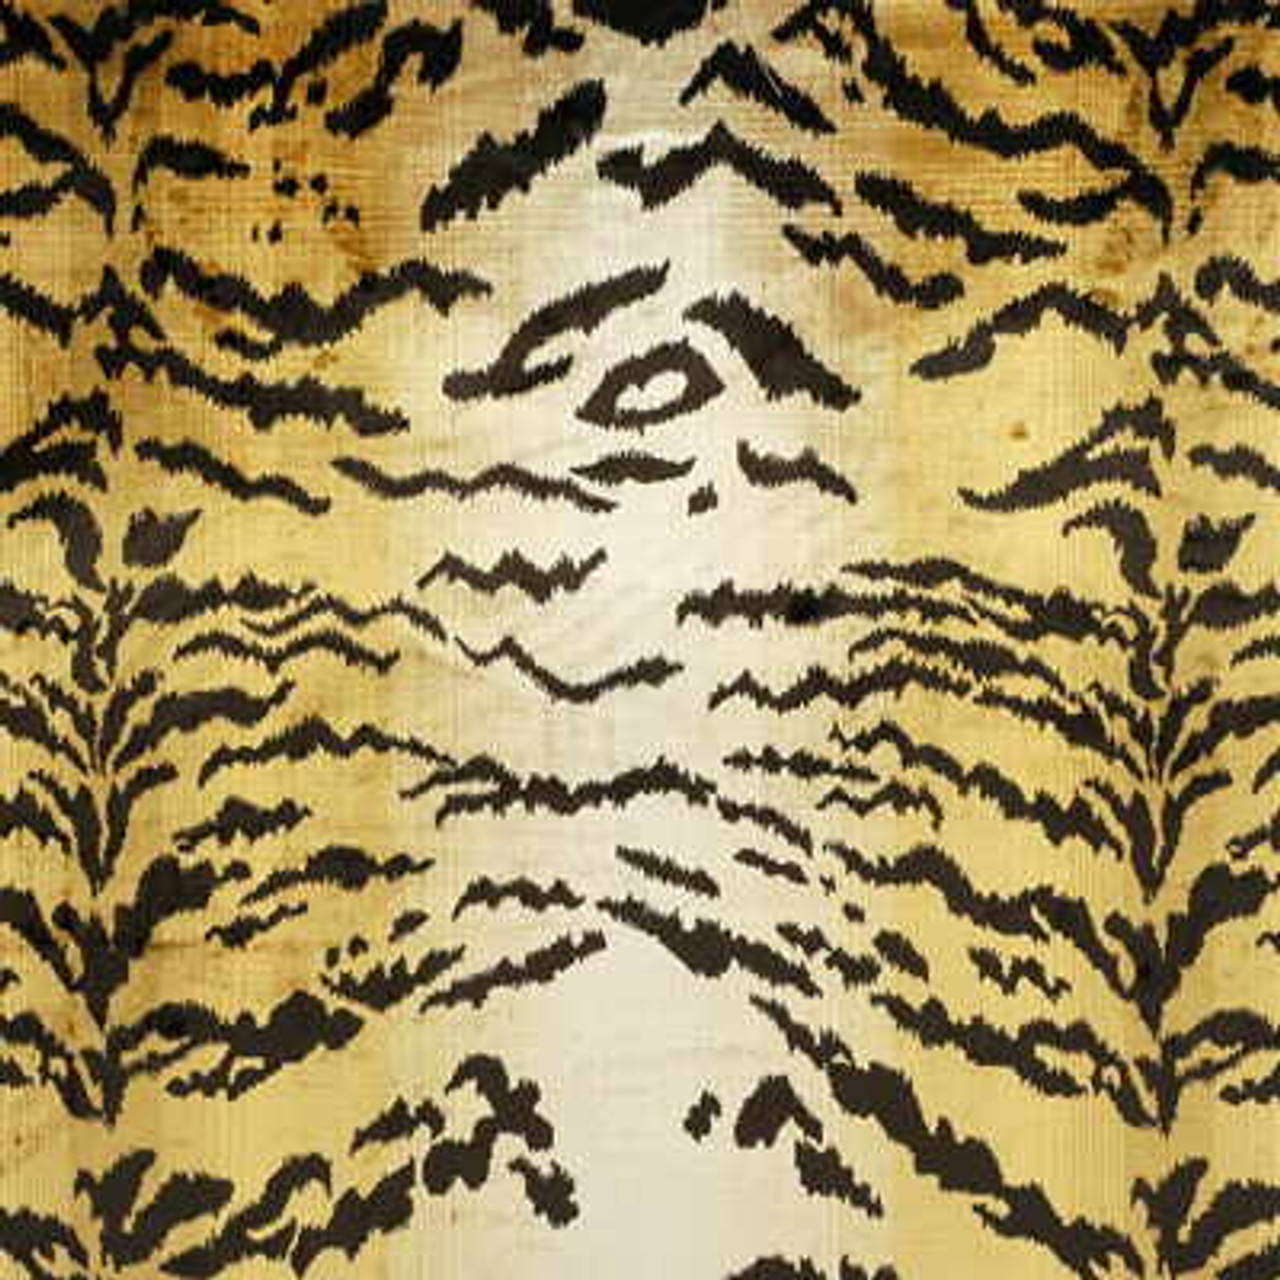 Thibaut Velvet Jacquard Silk Velvet Upholstery Fabric in Brown $29.95 per  yard